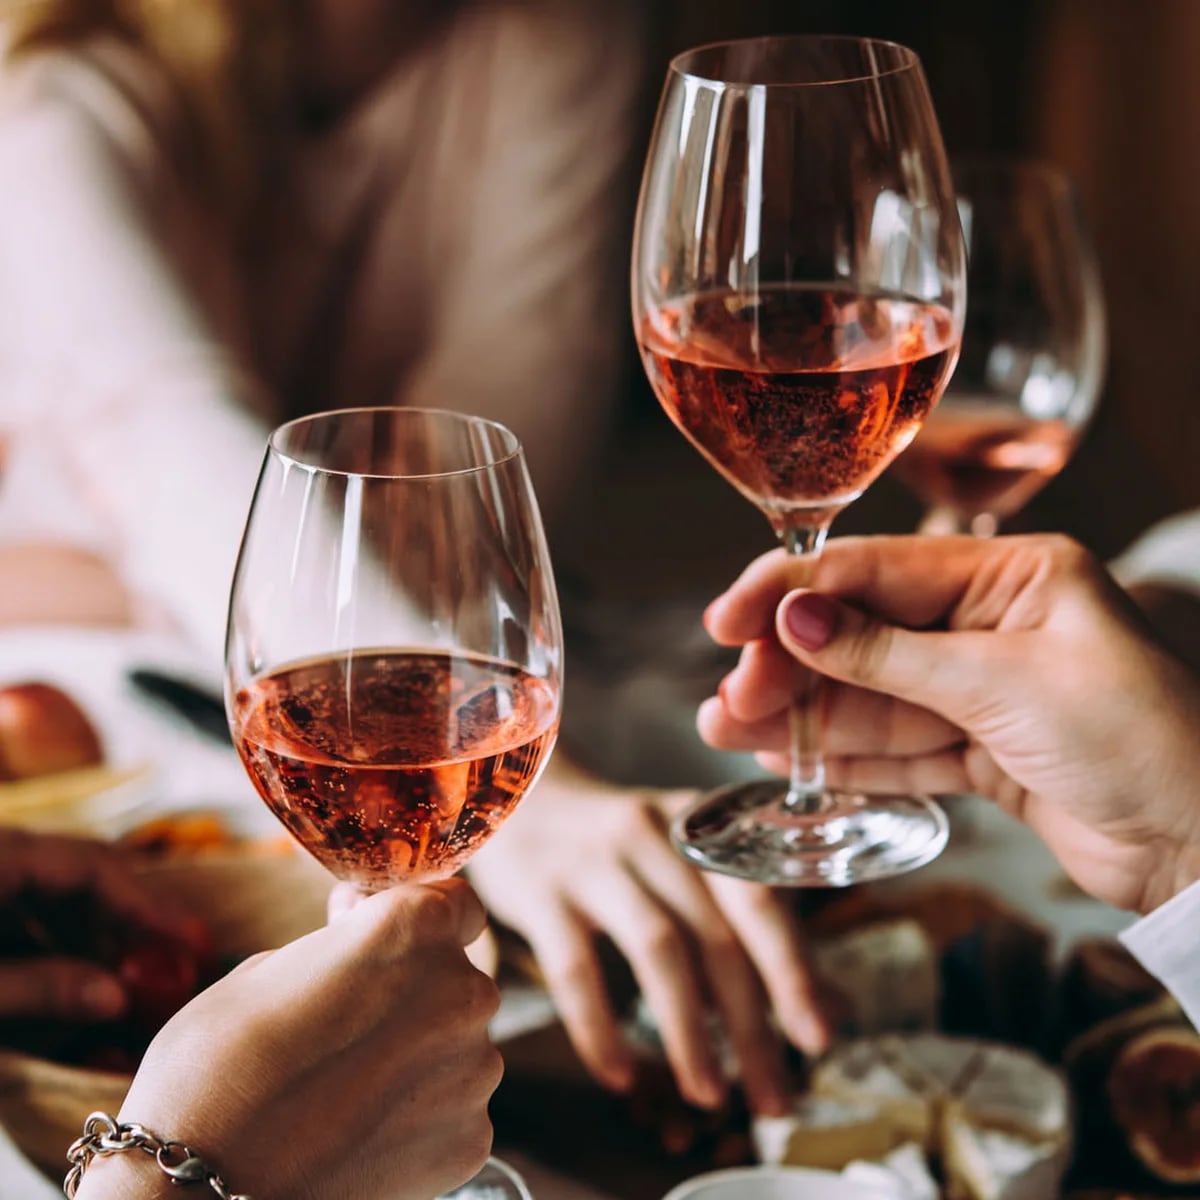 Por qué el vino rosado provoca más dolores de cabeza que otras bebidas alcohólicas - Infobae